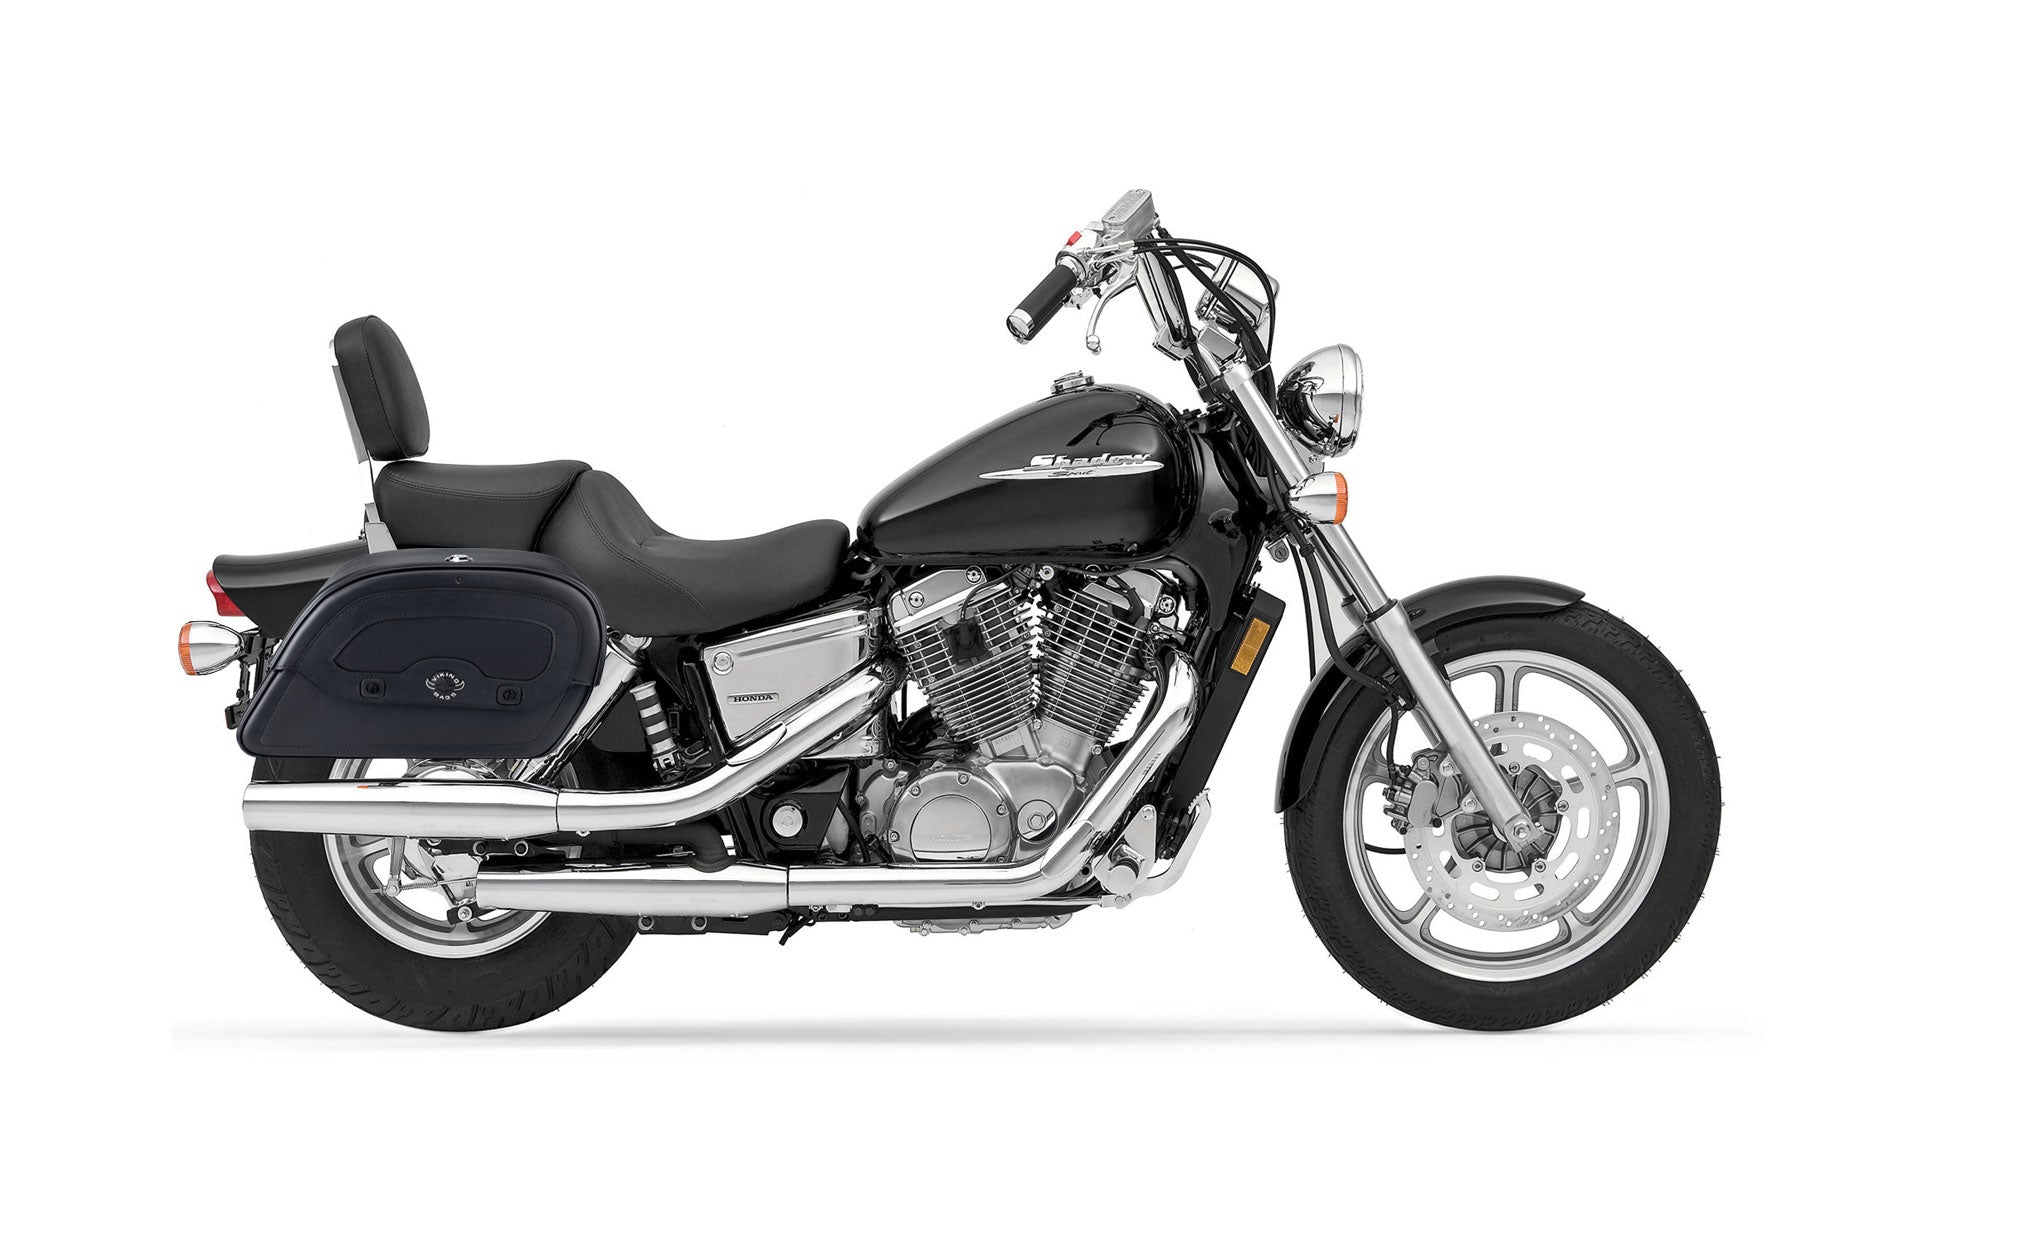 Viking Warrior Medium Honda Shadow 1100 Spirit Leather Motorcycle Saddlebags on Bike Photo @expand